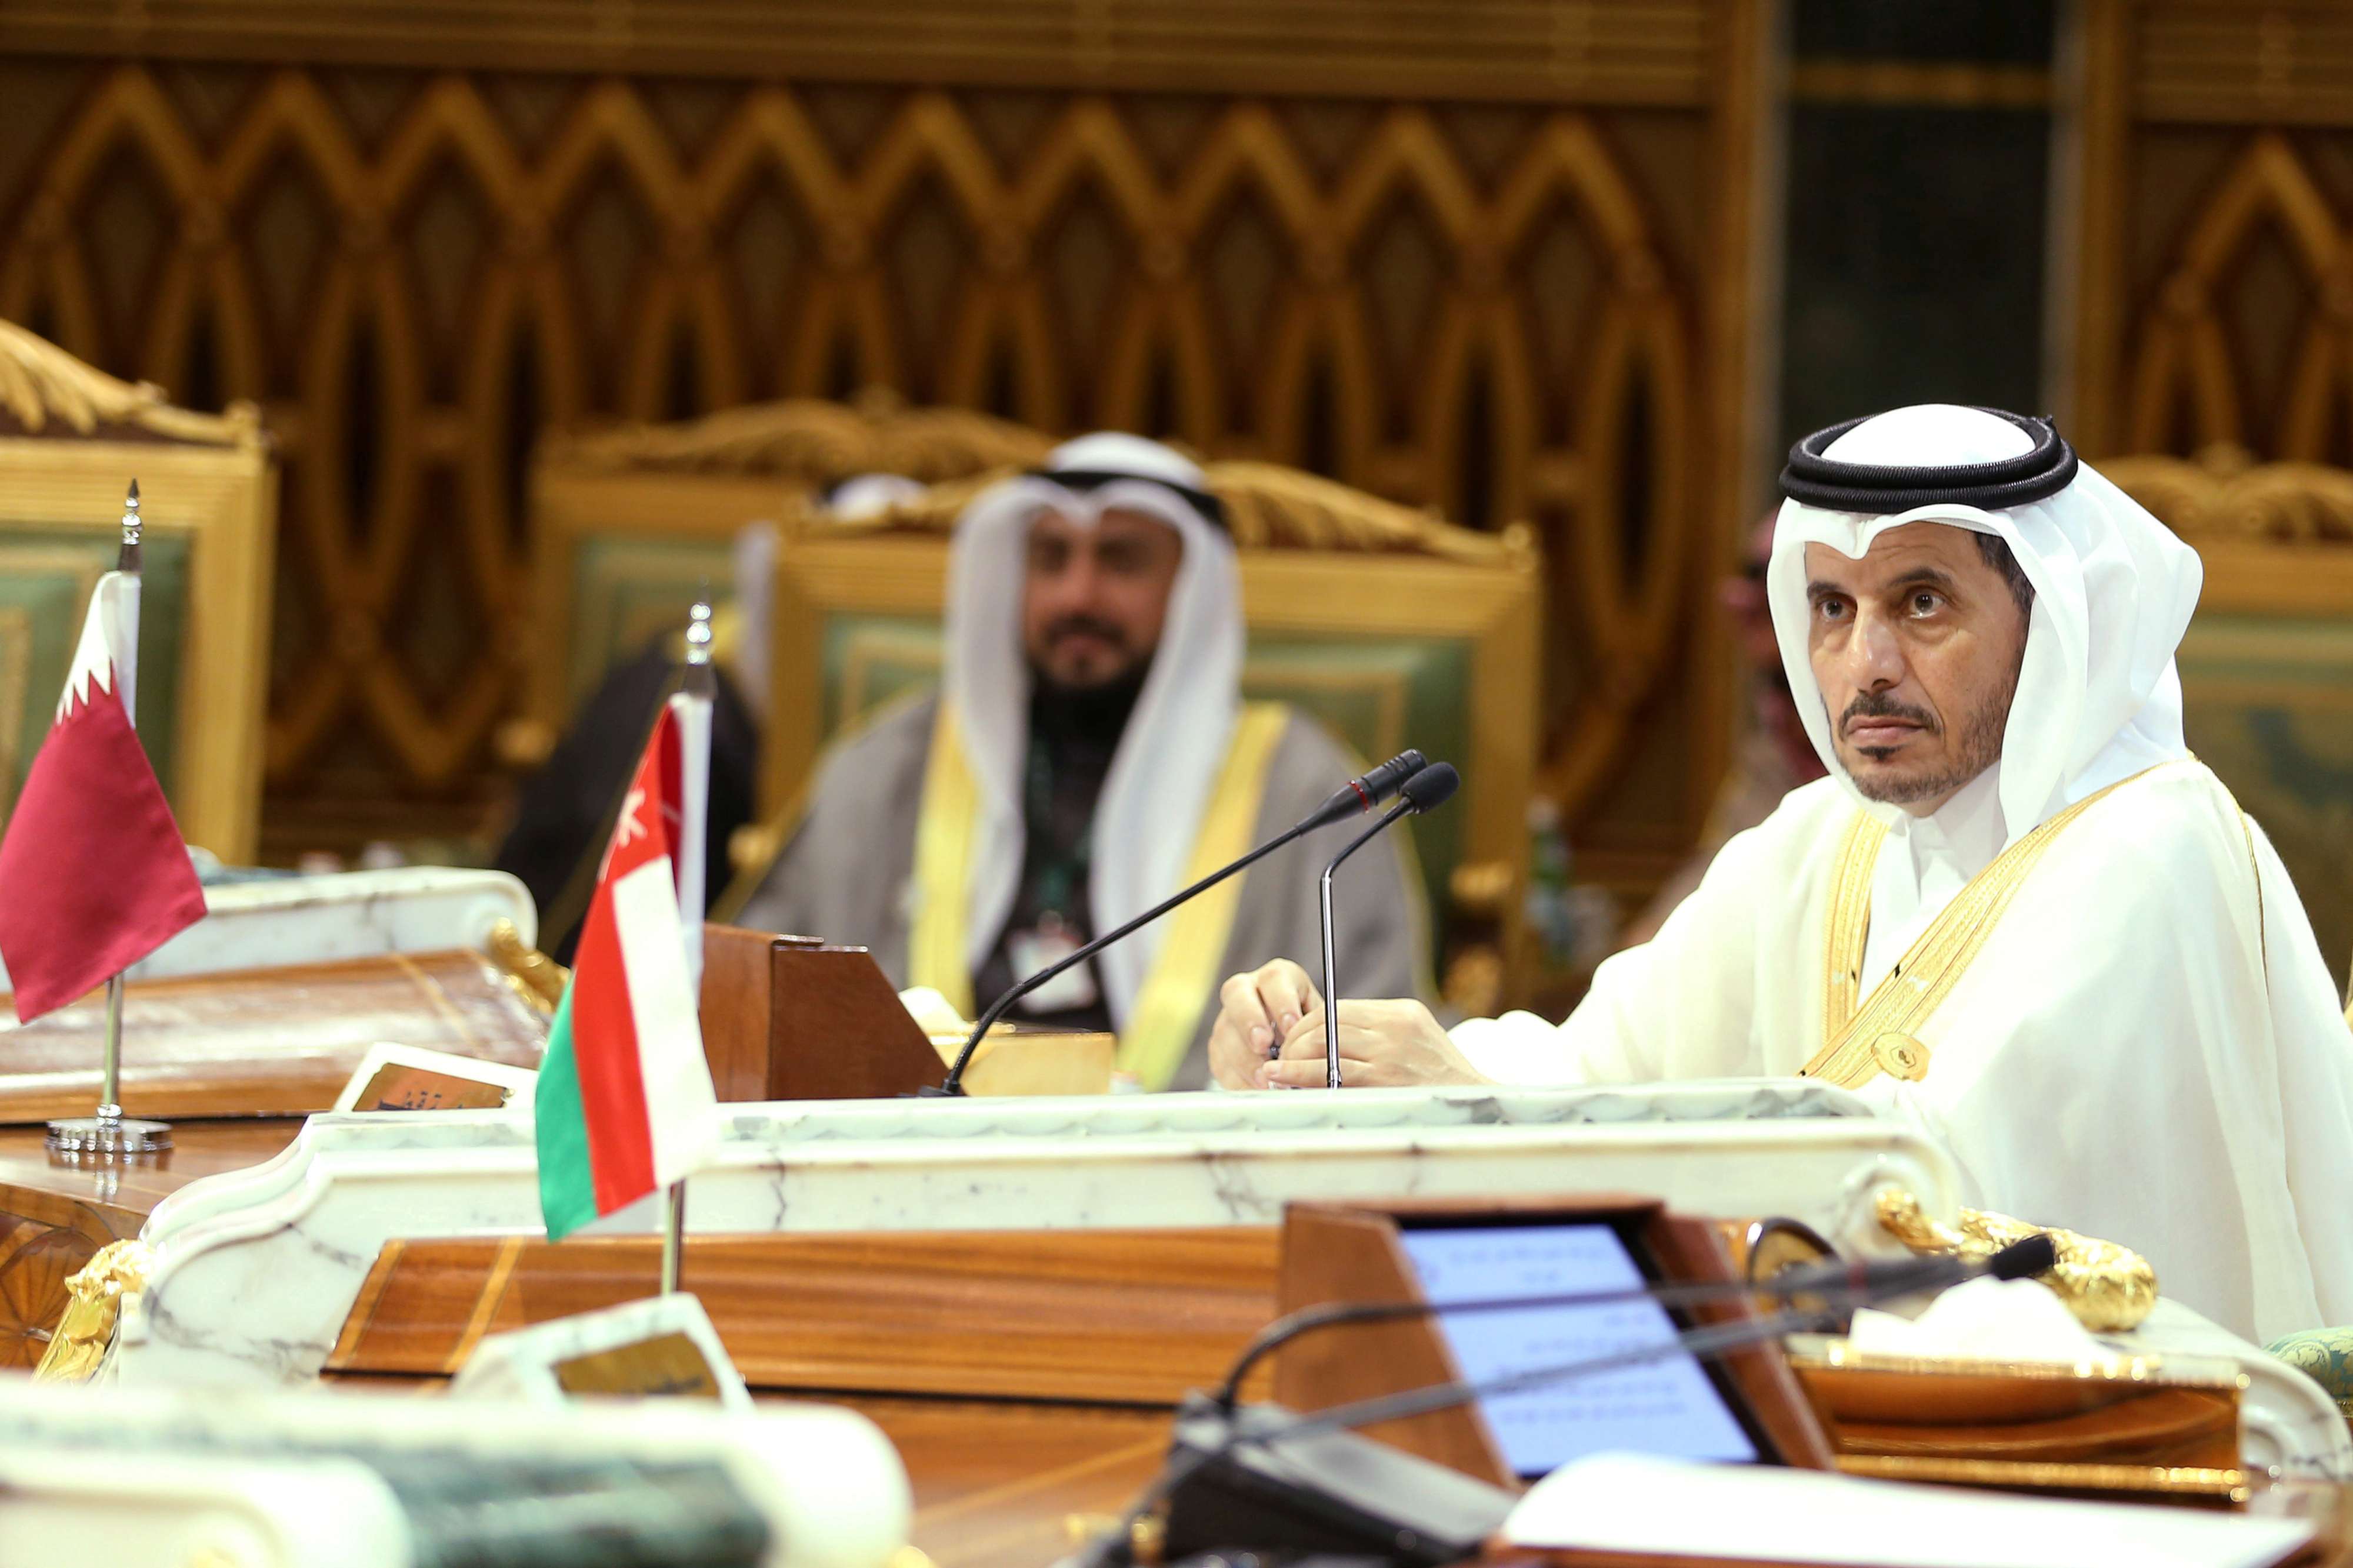 استقالة الشيخ عبدالله بن ناصر تأتي بعد خلاف مع الشيخ تميم حول السياسات الخارجية